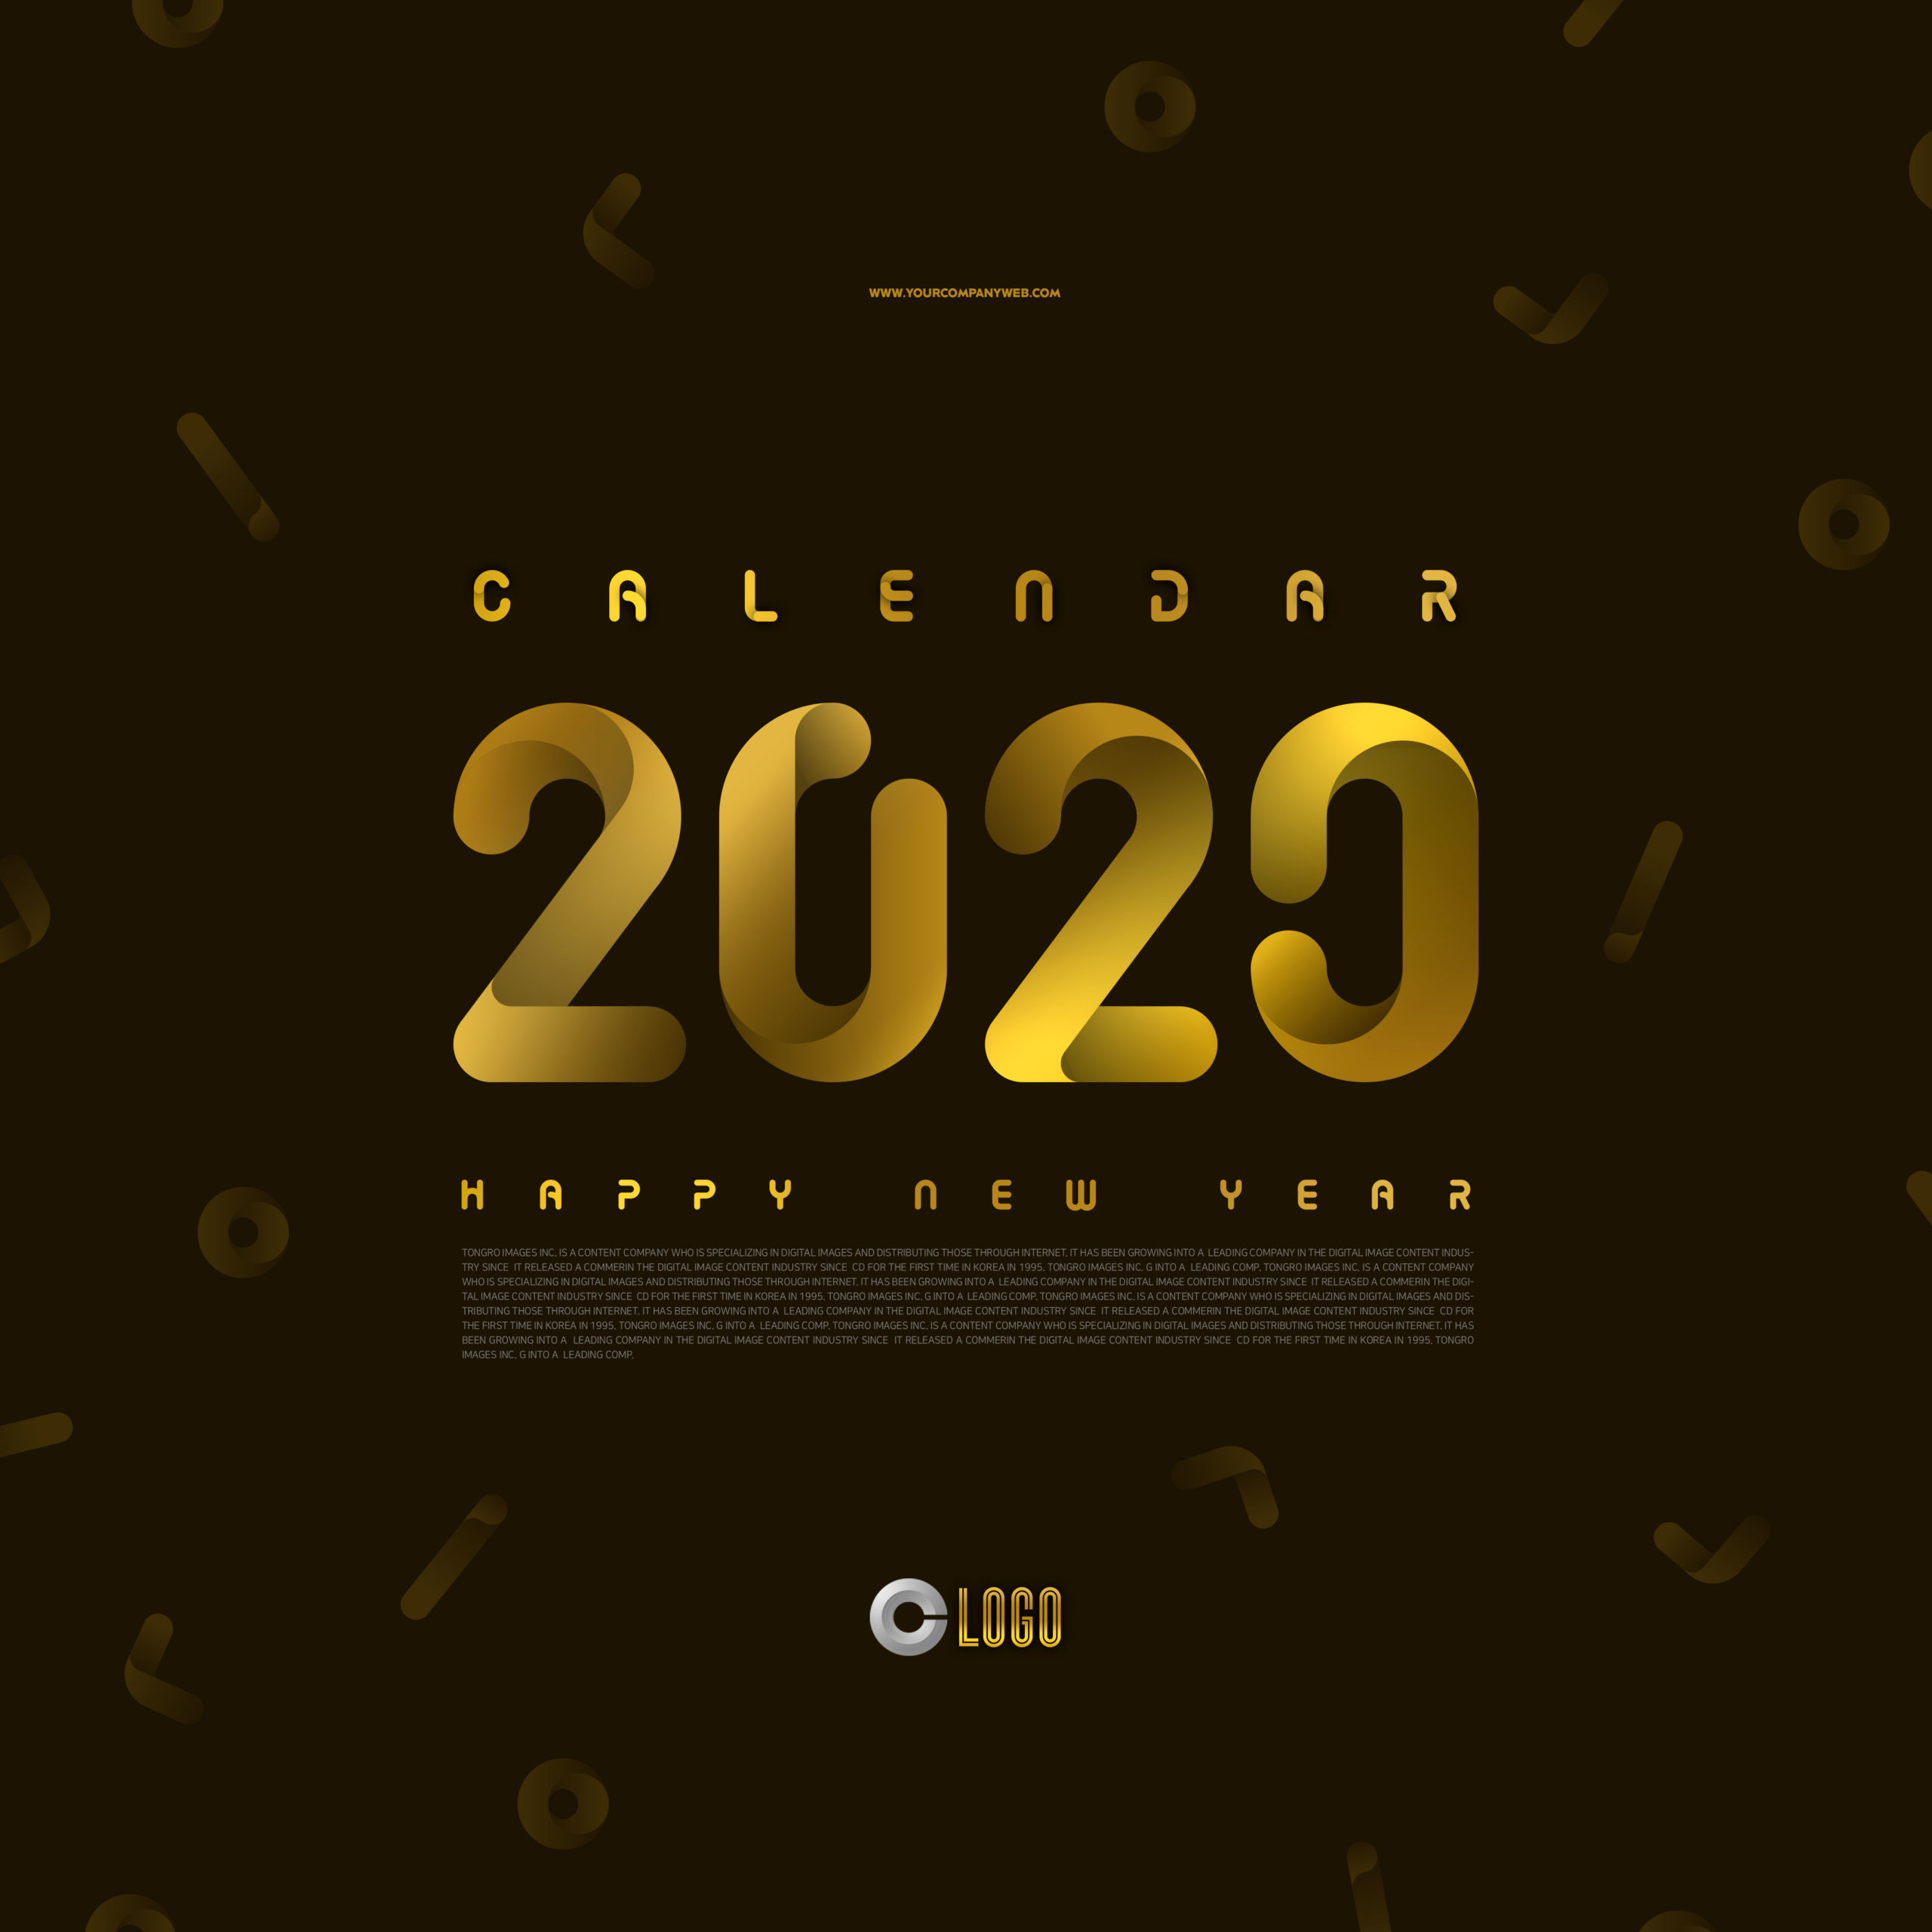 扭曲效果2020金色字体海报传单设计素材[PSD]插图